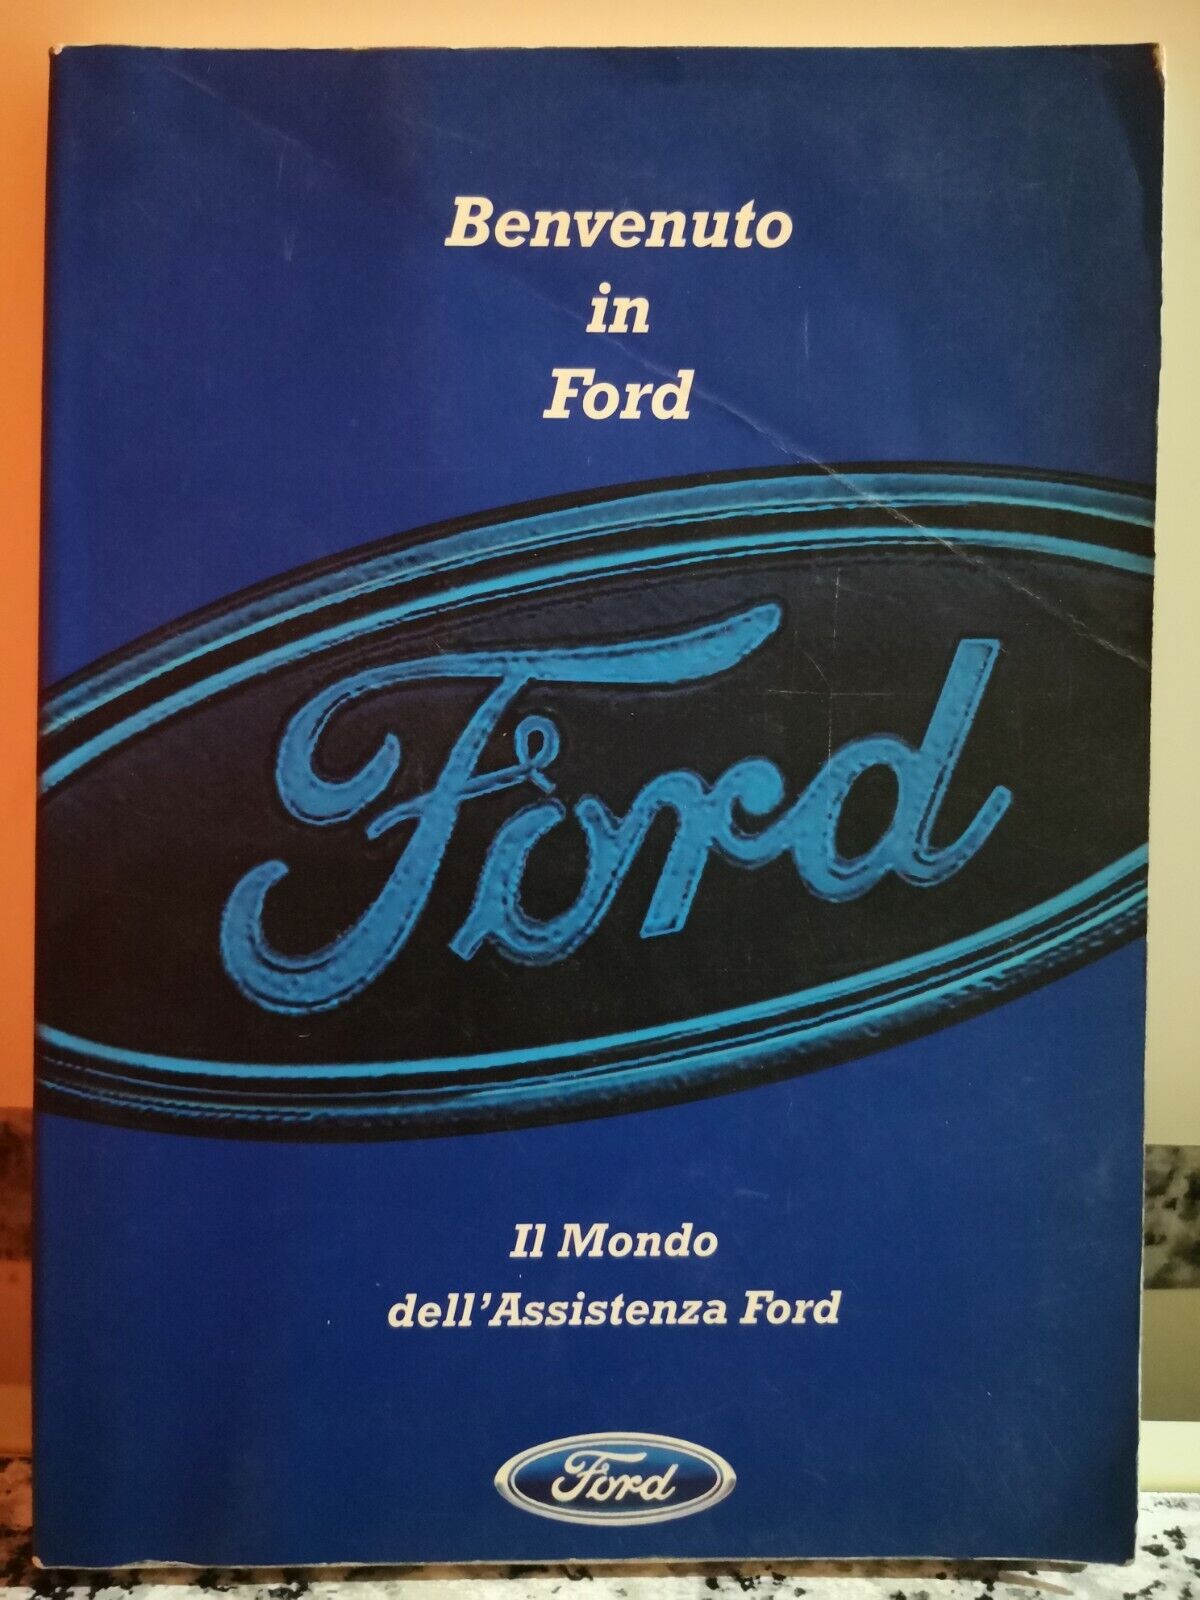  Il Mondo delL'assistenza Ford di A.a.v.v,  1997,  De Agostini-F